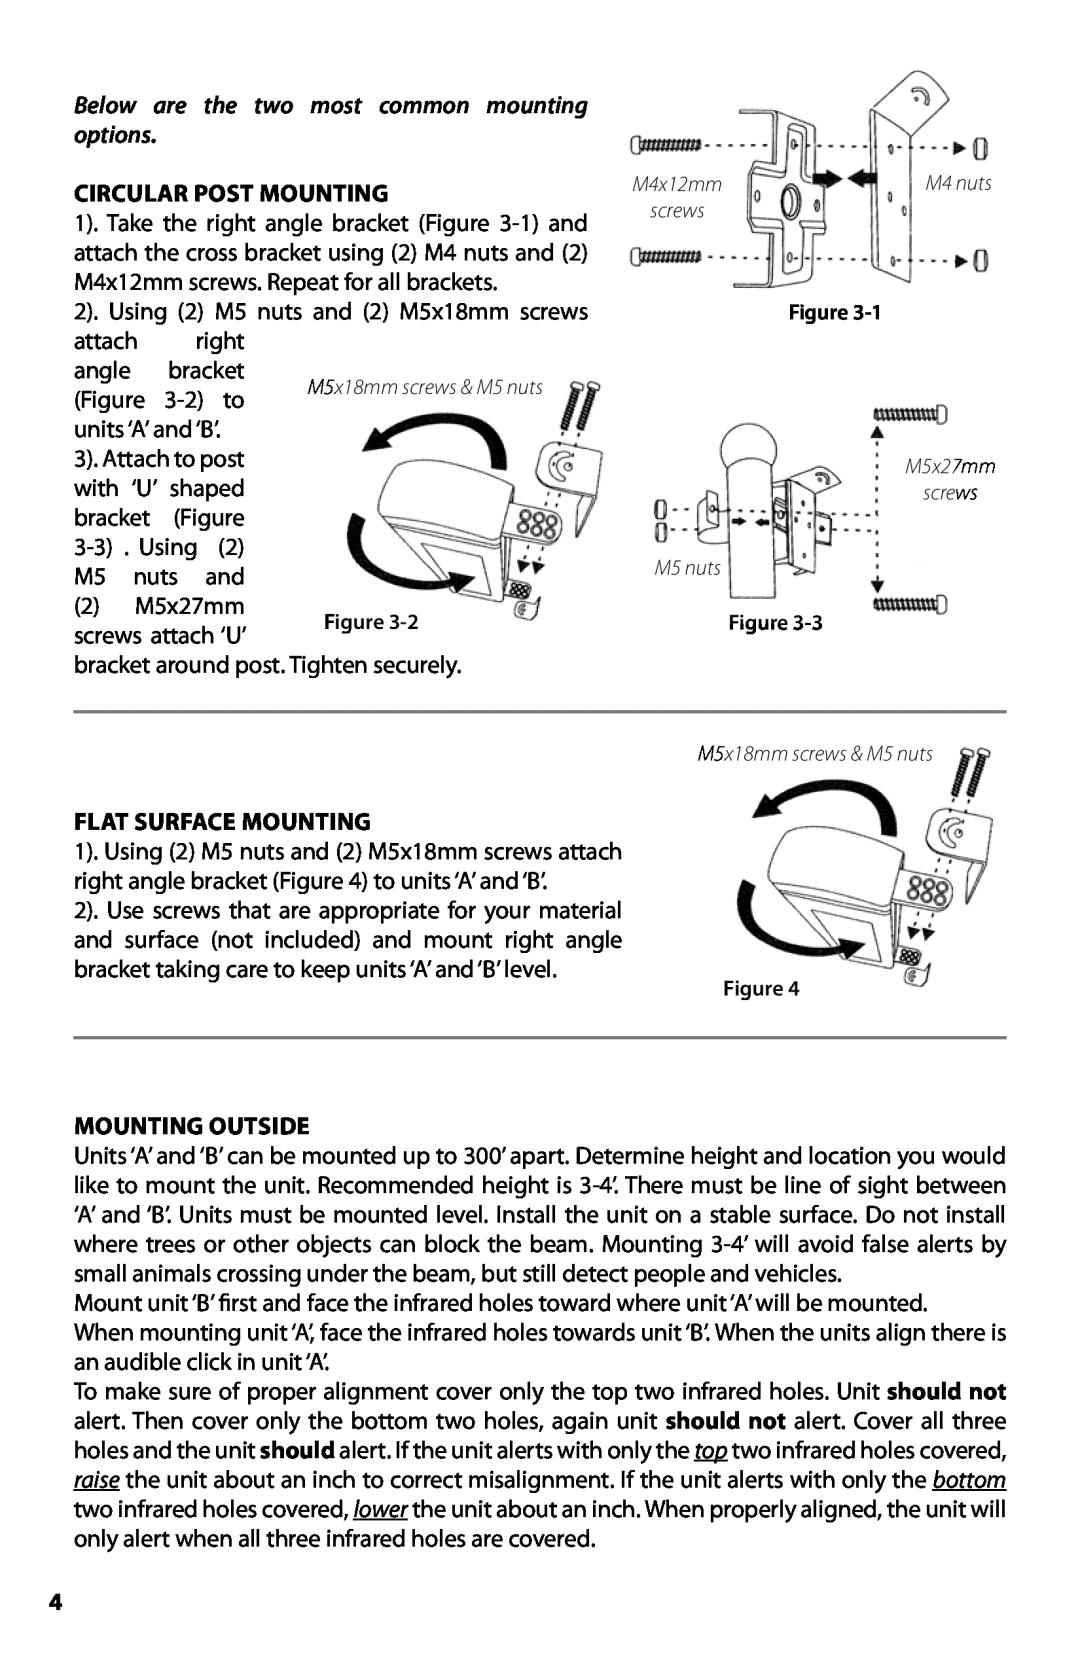 Dakota Alert BBT-2500 manual Circular Post Mounting, 2 M5x27mm, screws attach ‘U’, Flat Surface Mounting, Mounting Outside 